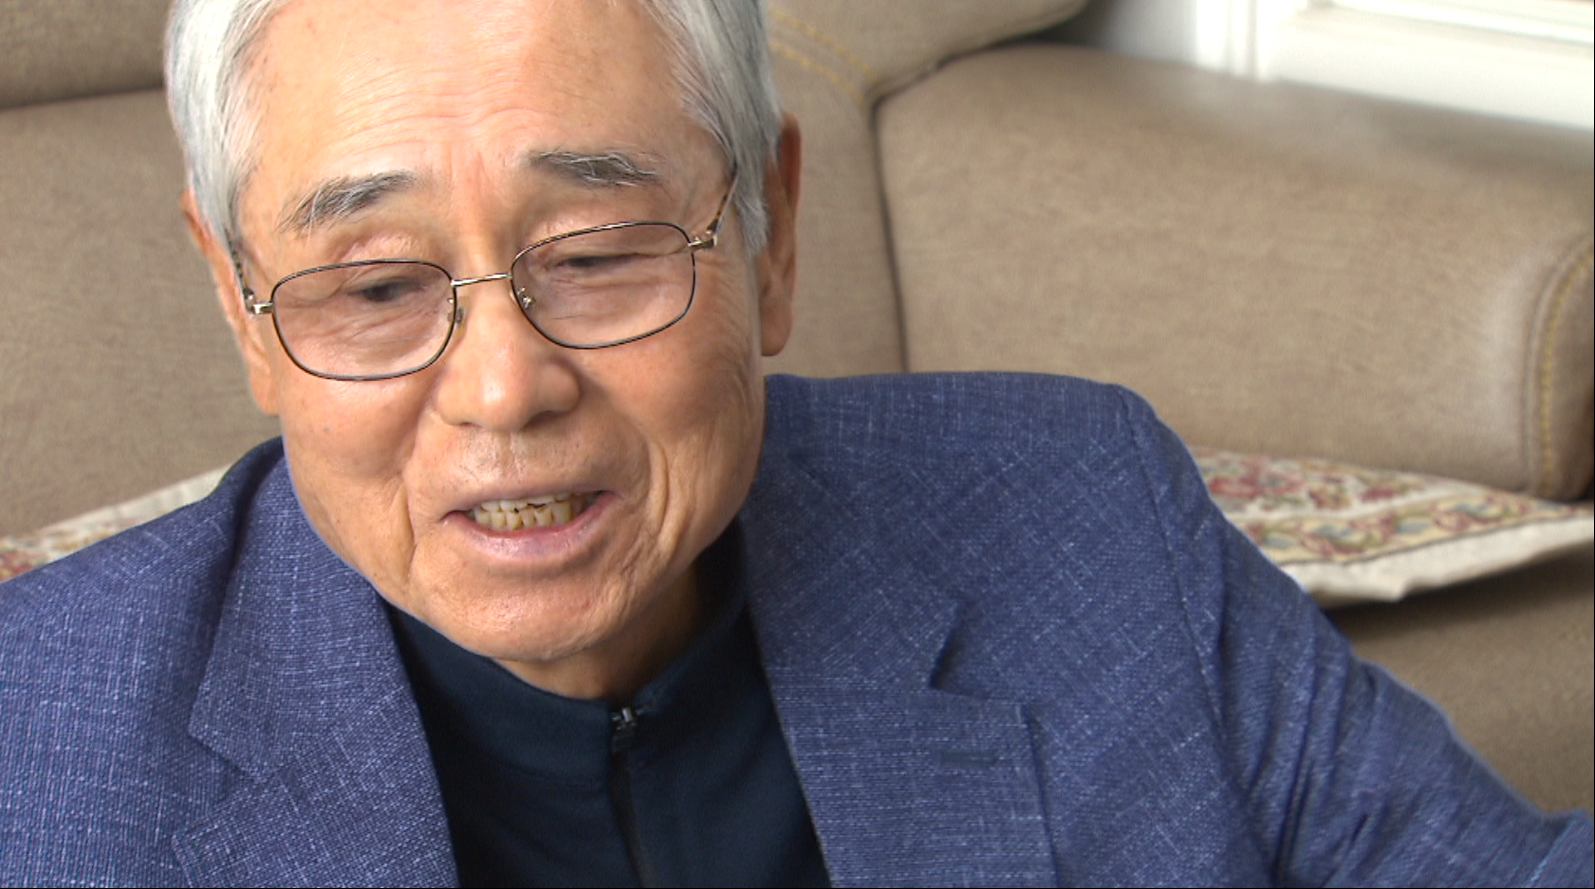 박남규 할아버지는 20년 전 교사로 재직하다가 은퇴하셨습니다. 이후 10년간 아내의 곁에서 병간호를 했습니다.